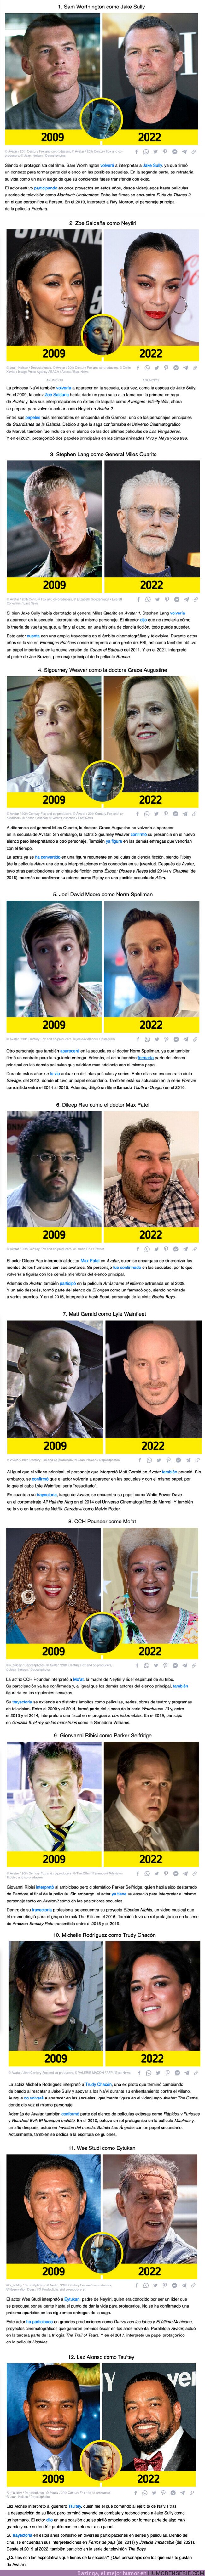 100449 - GALERÍA: Así se ven 12 actores de “Avatar” del 2009 y quiénes son los que aún tienen mucho por hacer en la secuela